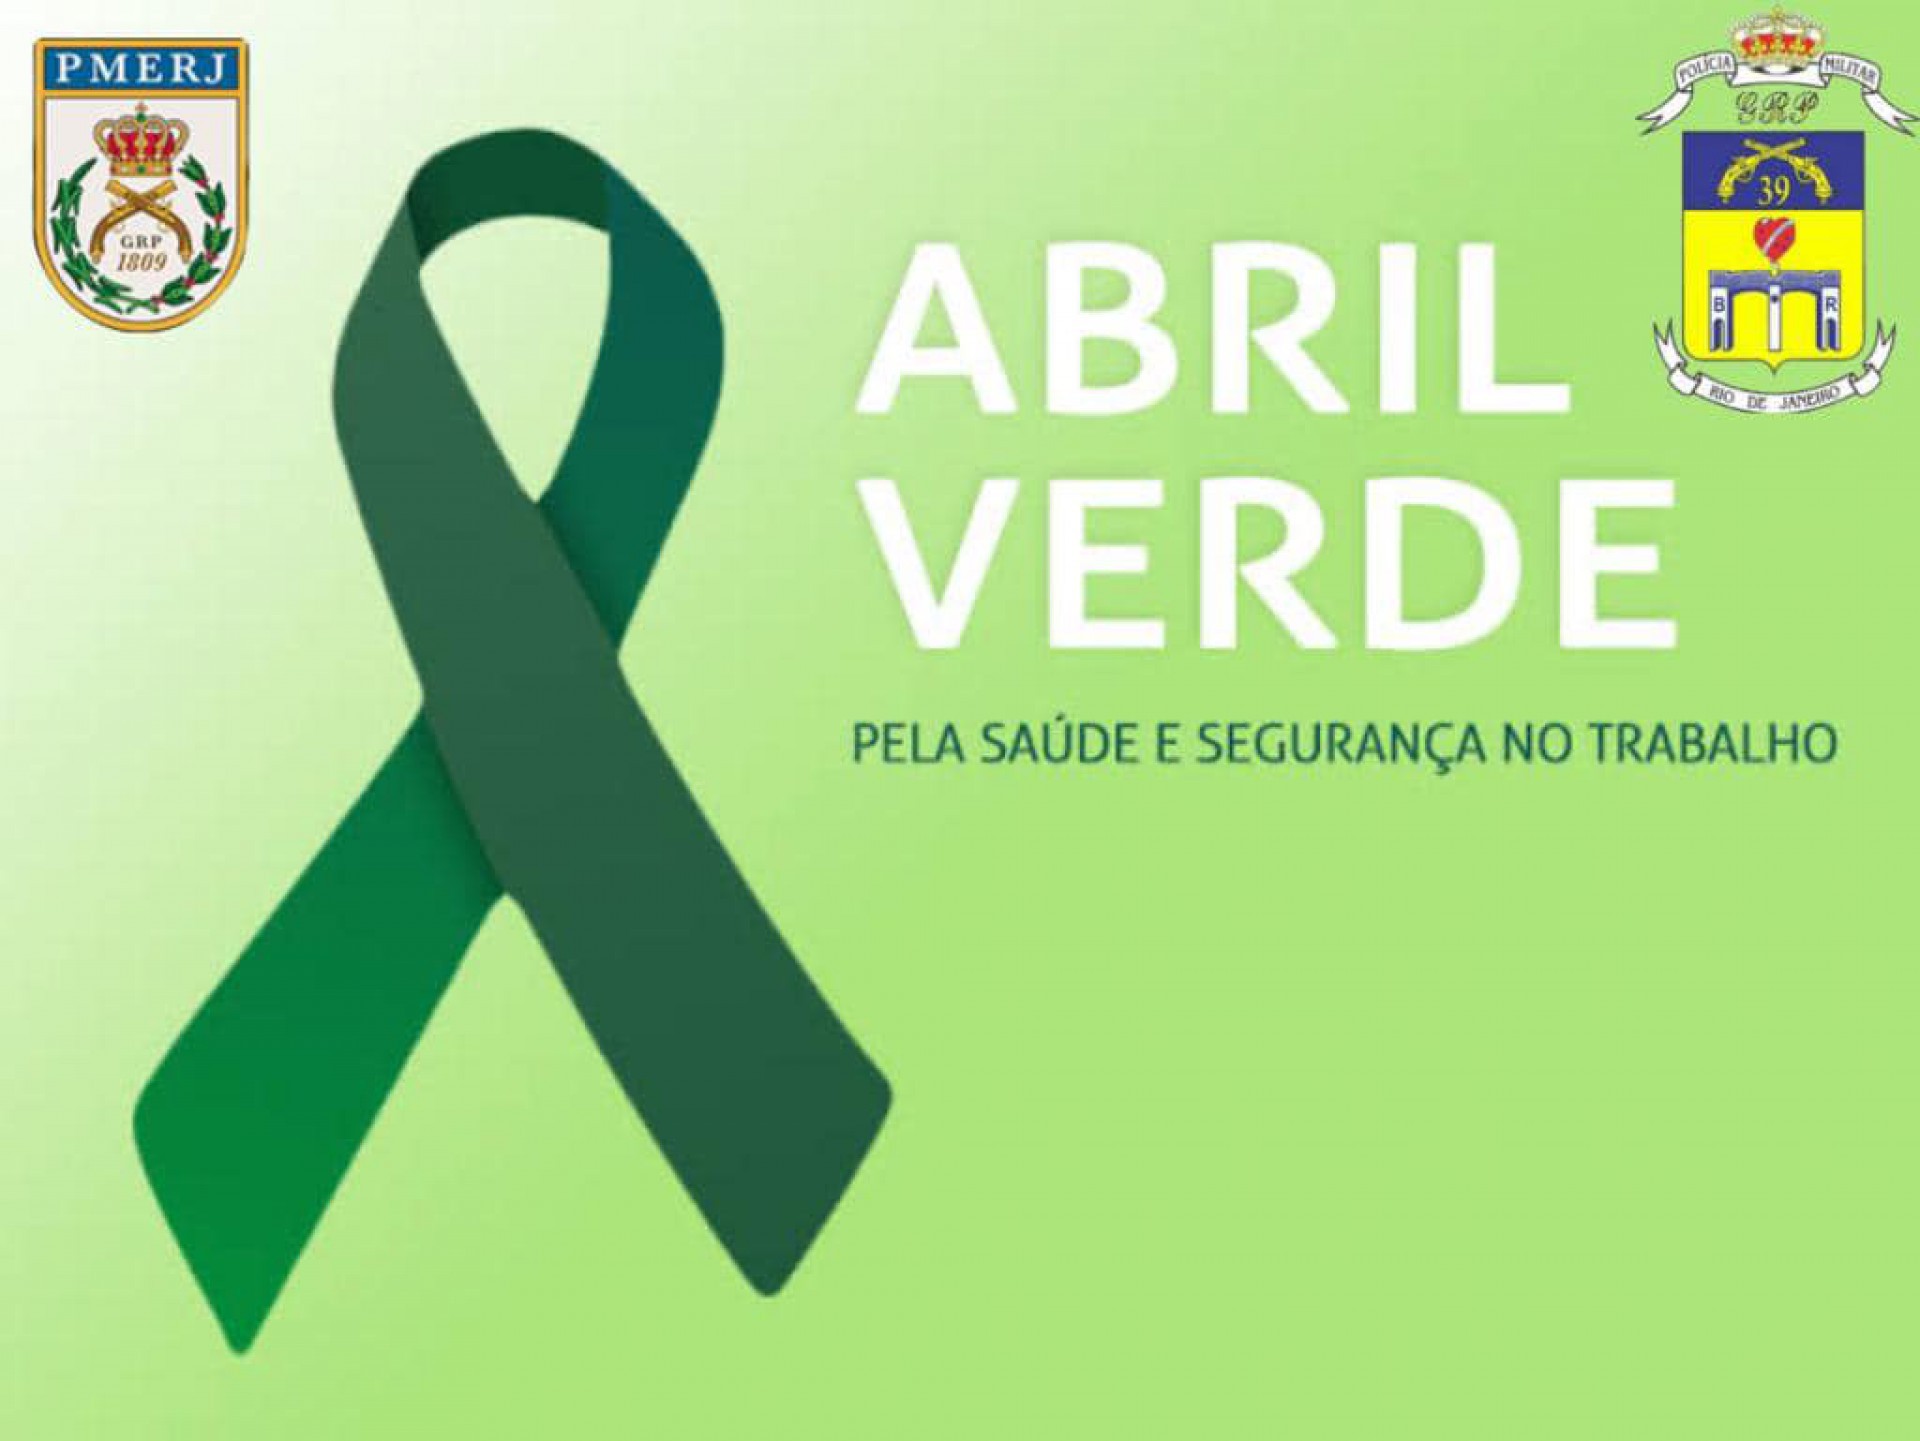 O mês de abril é marcado pelo Movimento Abril Verde, instituído para a conscientização sobre a segurança e saúde no trabalho - Divulgação / 39º BPM